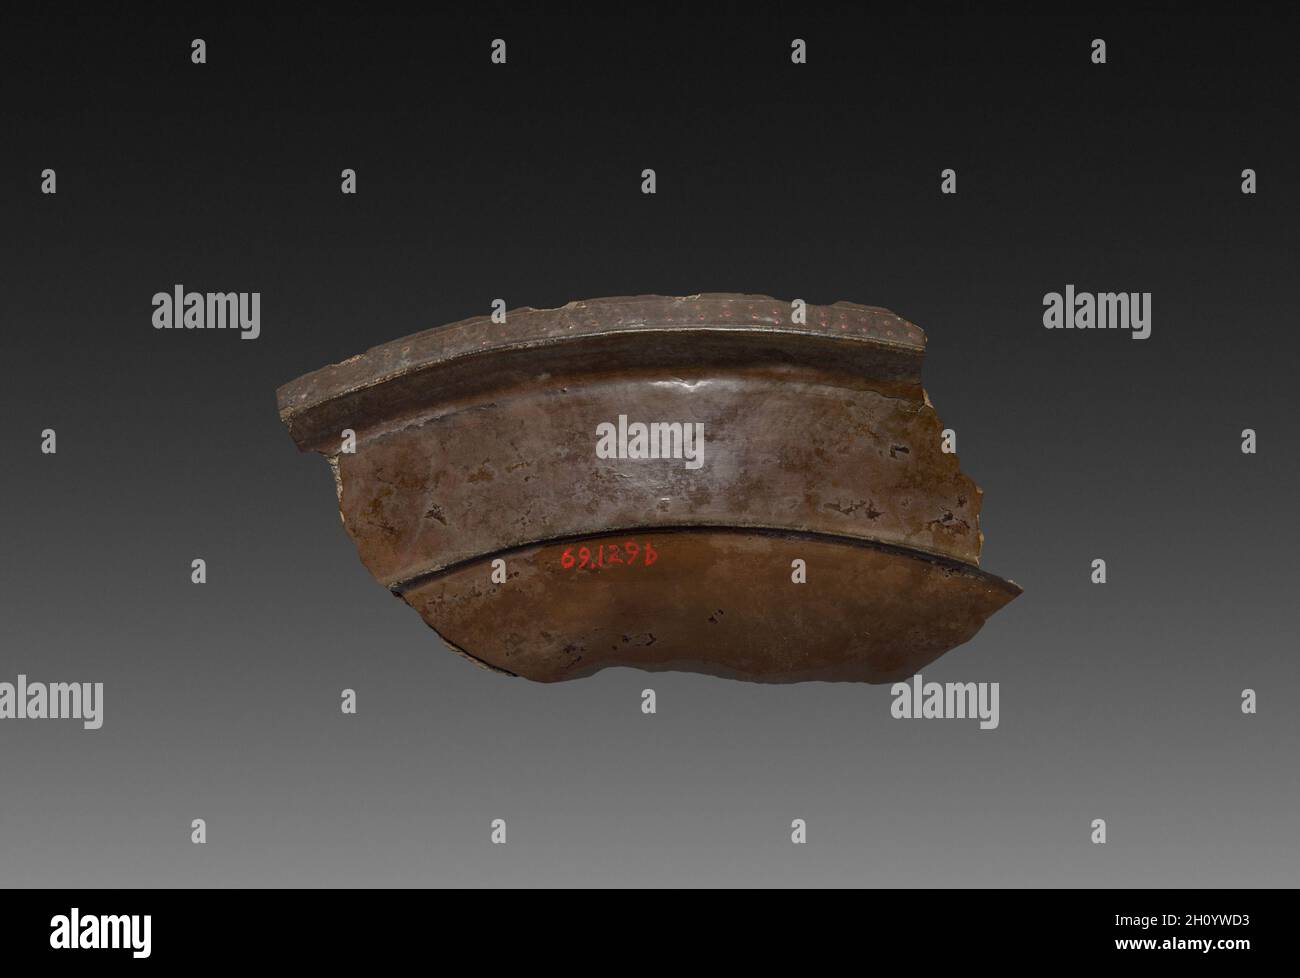 Frammento di un vassoio di lacca, 9-24. Cina, scavato a Lolang, Xin dynasty (9-23). La lacca; complessivo: 5,5 x 10,7 cm (2 3/16 x 4 3/16 in.). Foto Stock